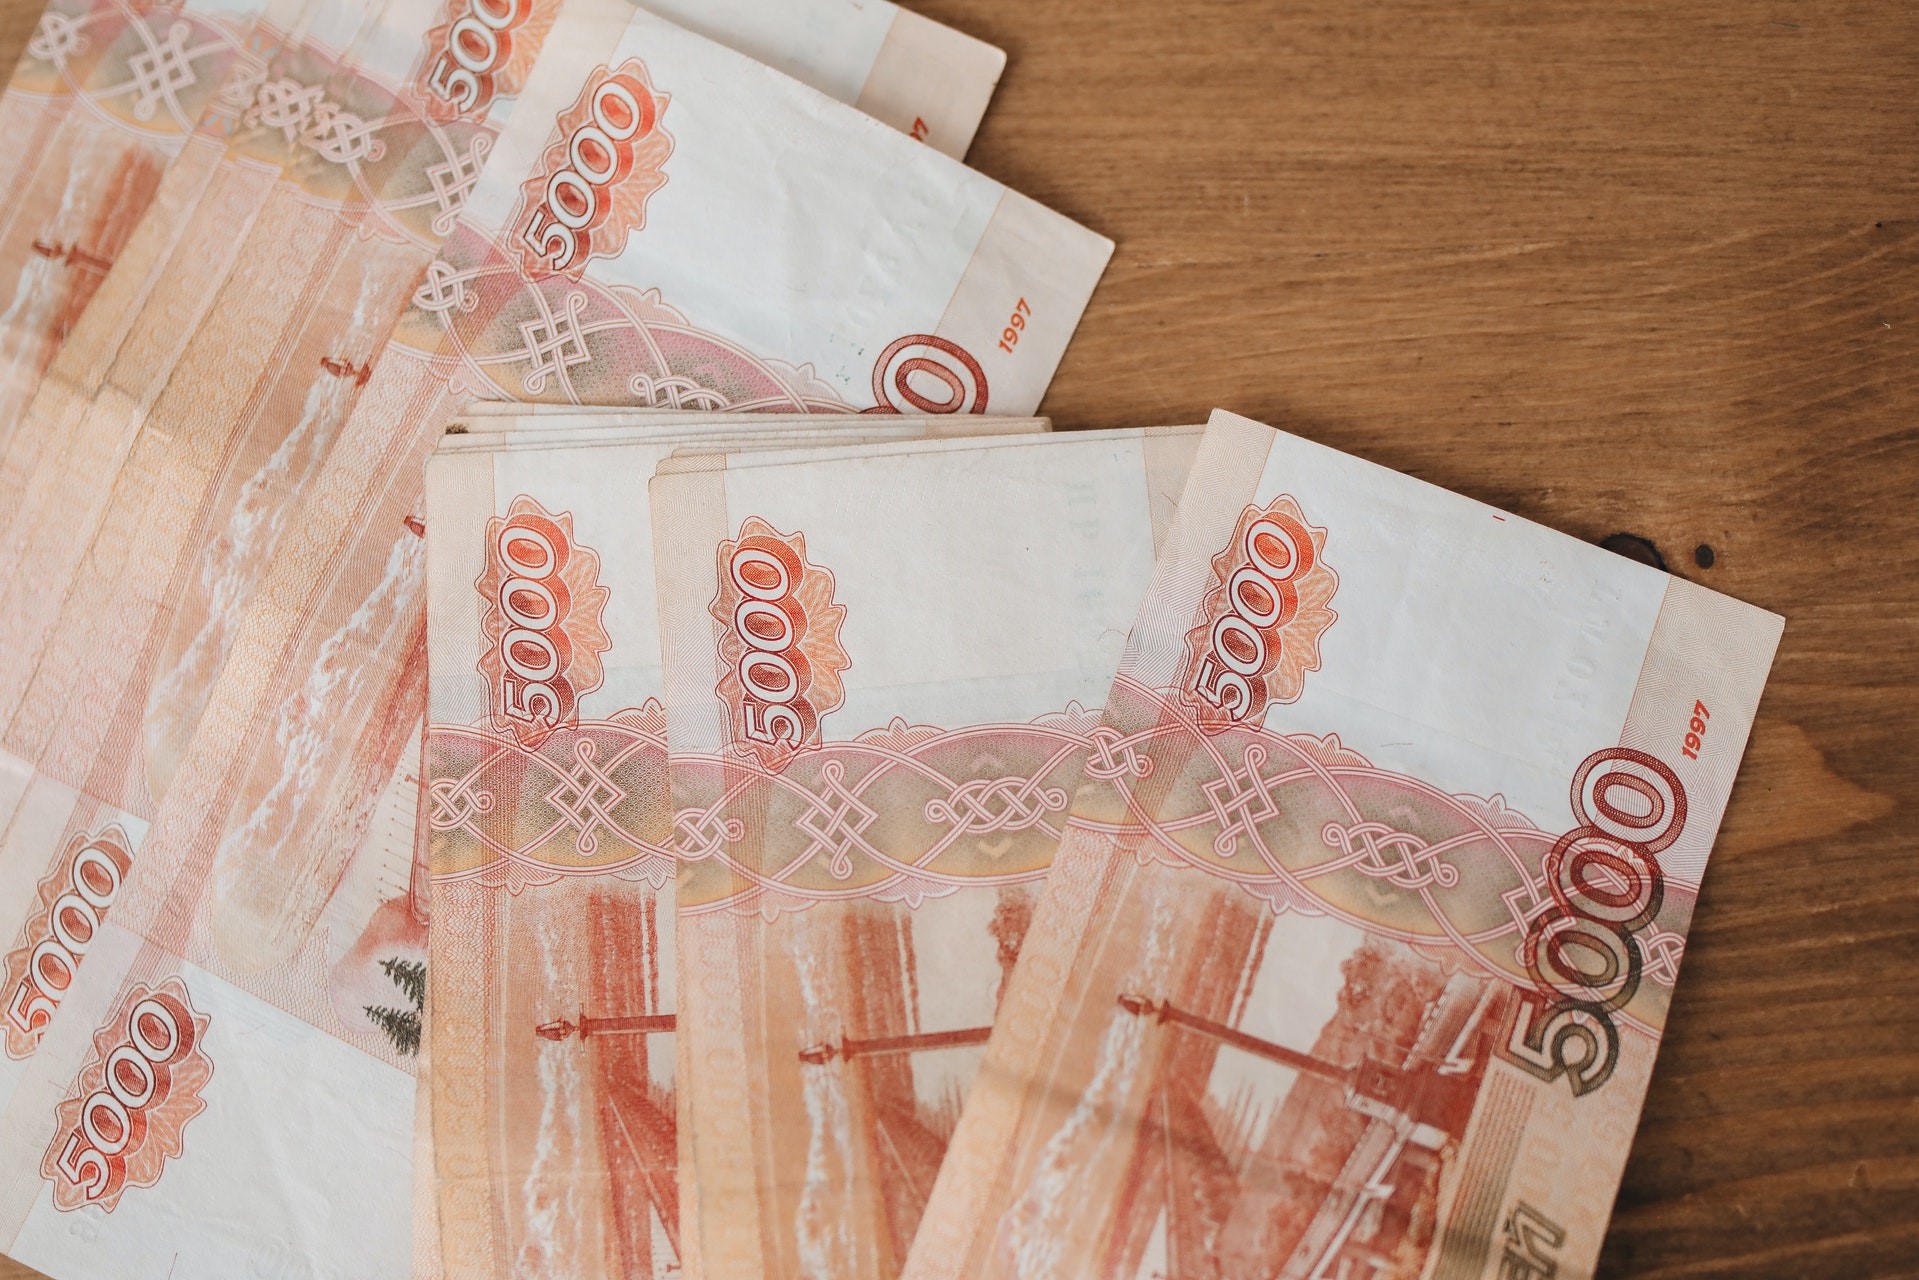 Учительница из Тулы отдала полмиллиона рублей доктору с сайта знакомств